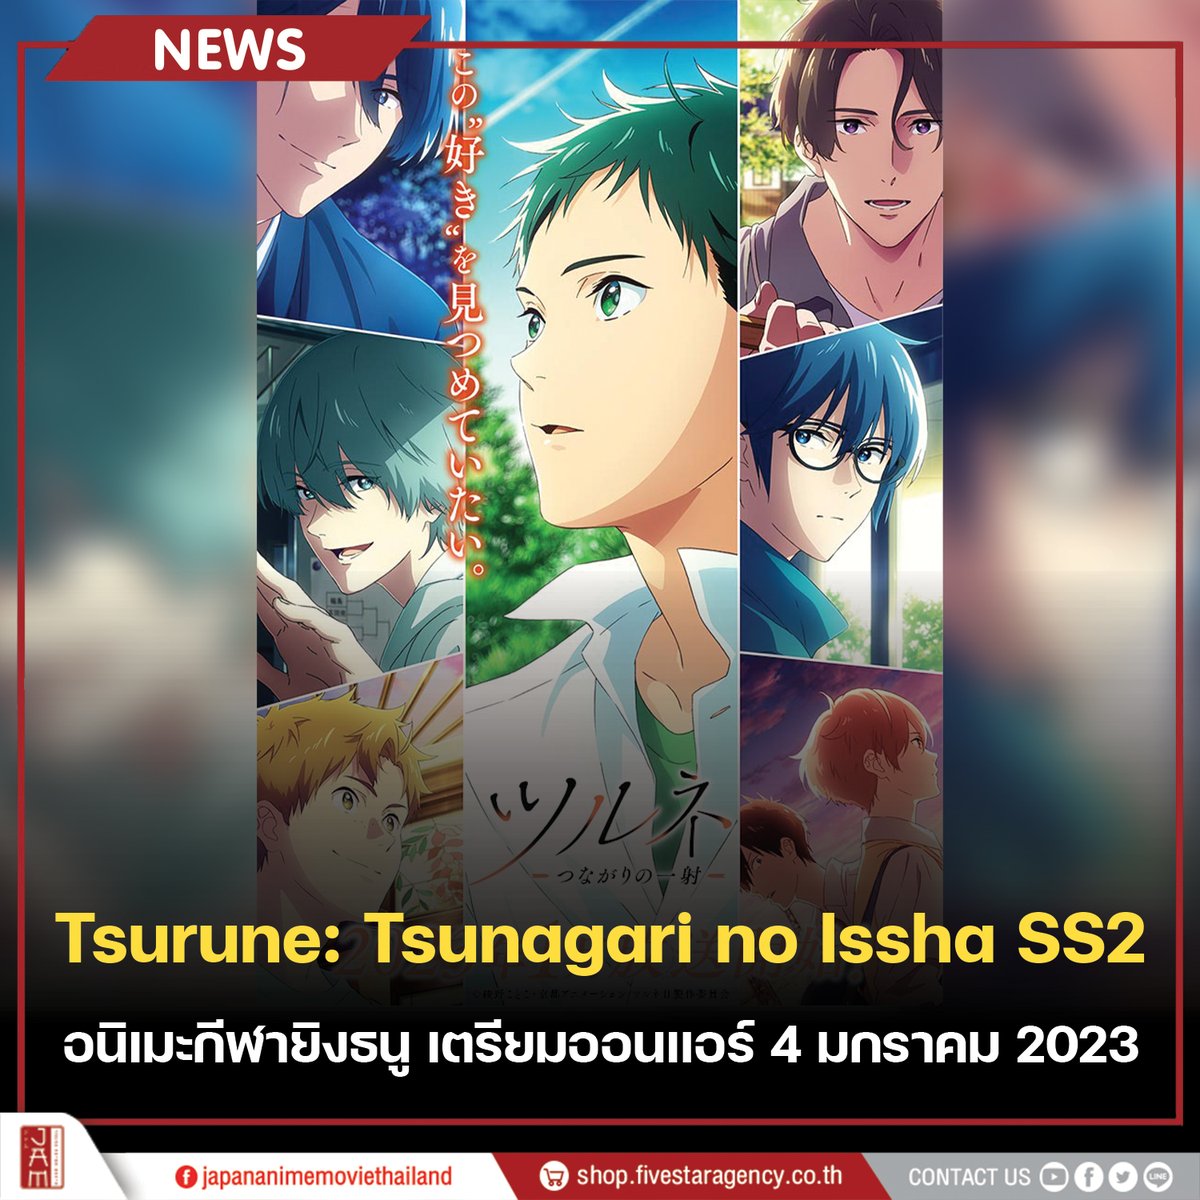 Tsurune: Tsunagari no Issha in 2023